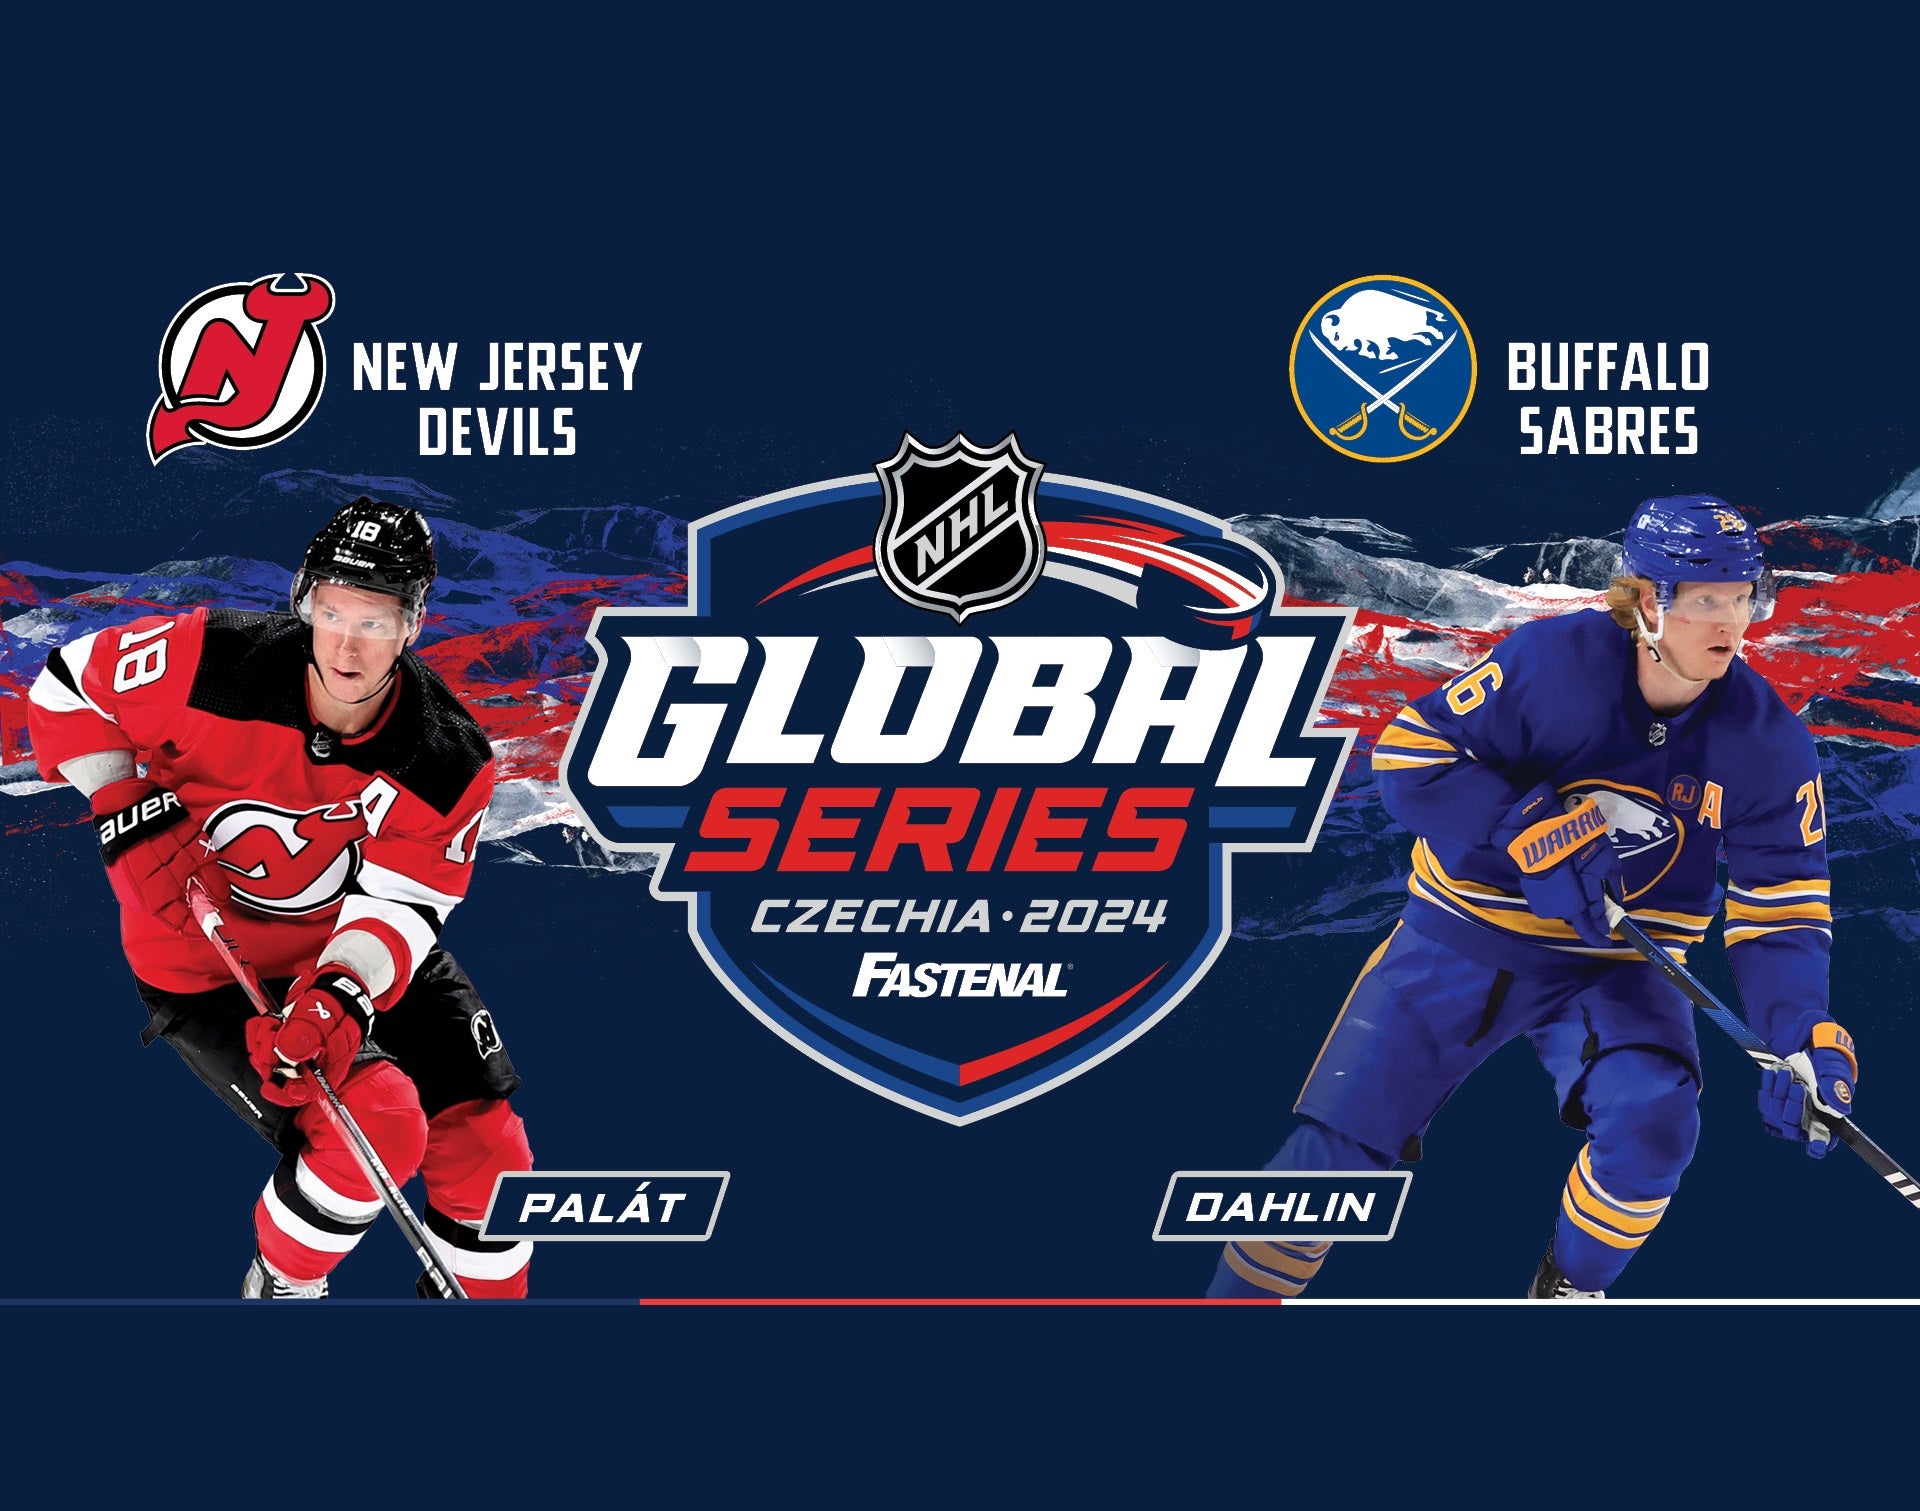 NHL v Praze- Buffalo Sabres – New Jersey Devils- NHL hokej Praha O2 arena- 2024 NHL Global series -O2 arena Praha 9 Českomoravská 2345/17a, Praha 9 19000